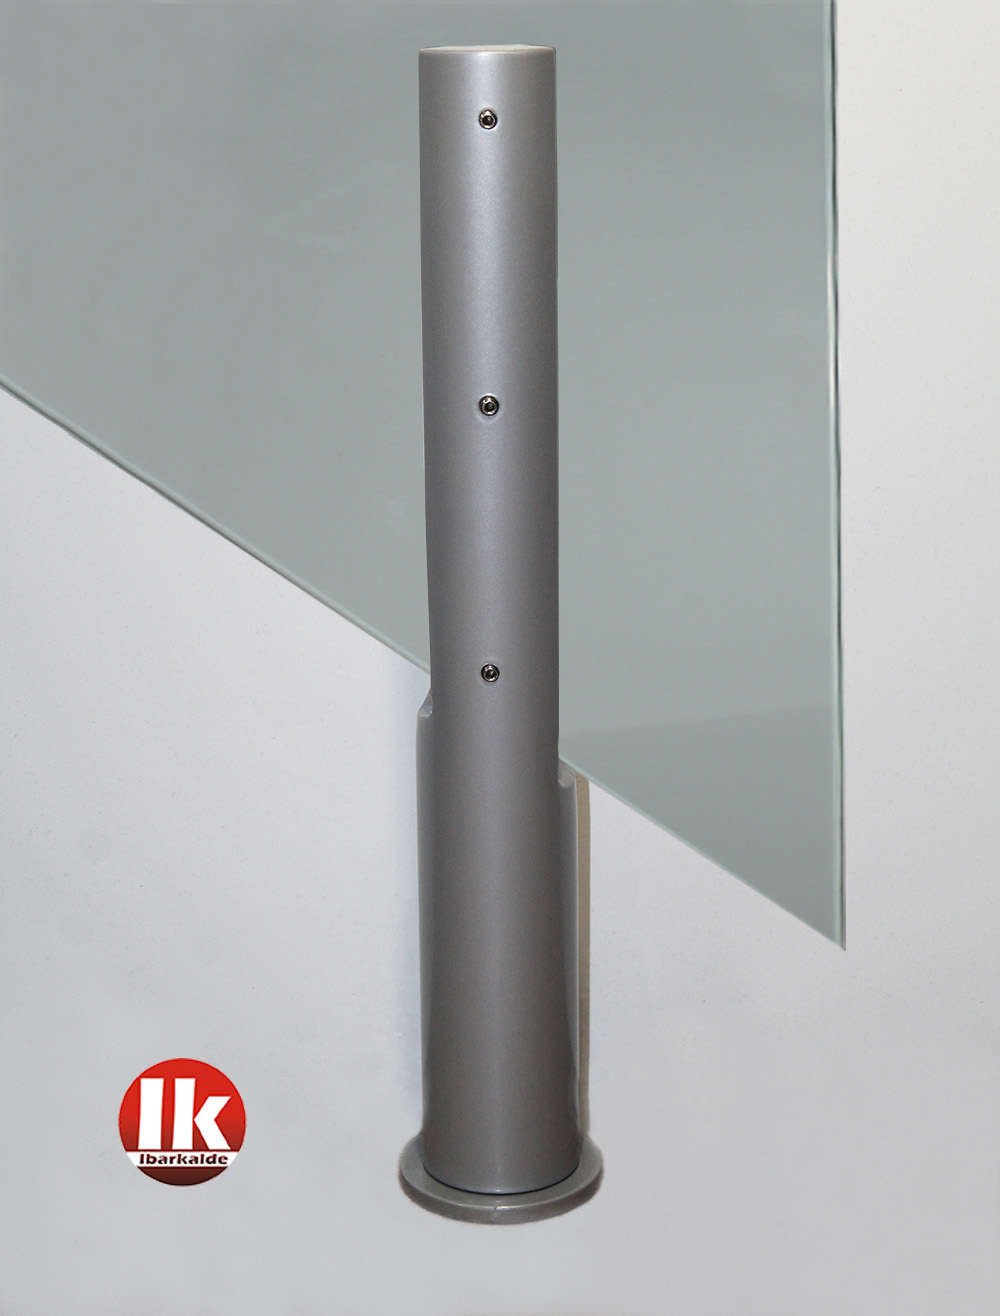 soporte ibarkalde para barandilla de vidrio color gris tramos inclinados glass support